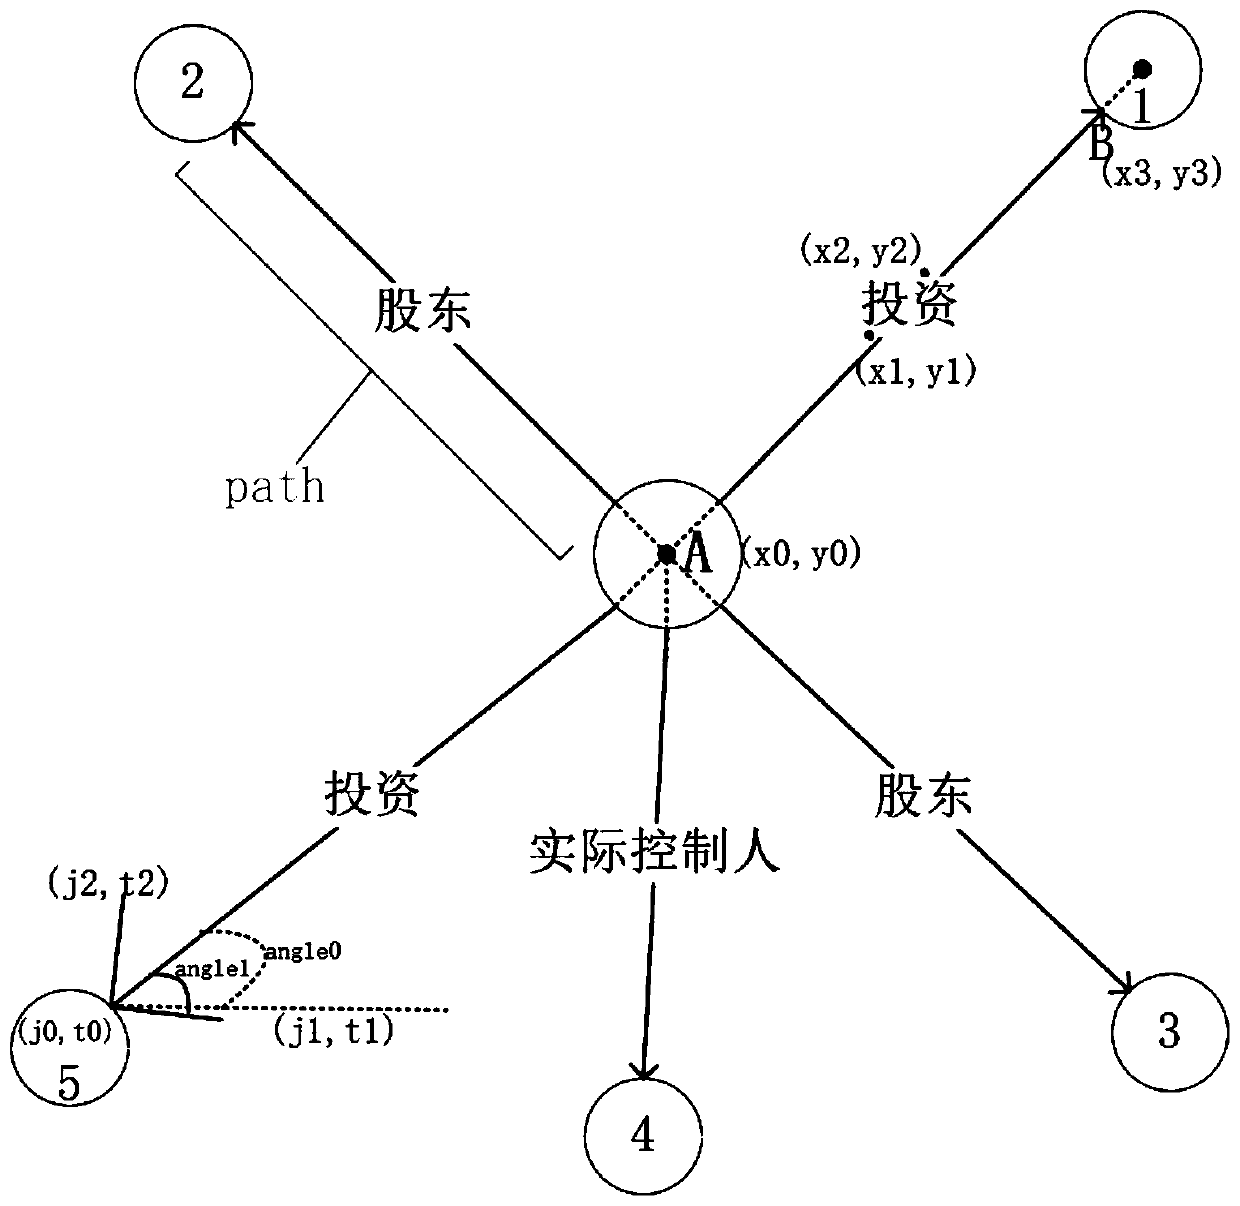 Method for displaying enterprise association relationship graph based on d3